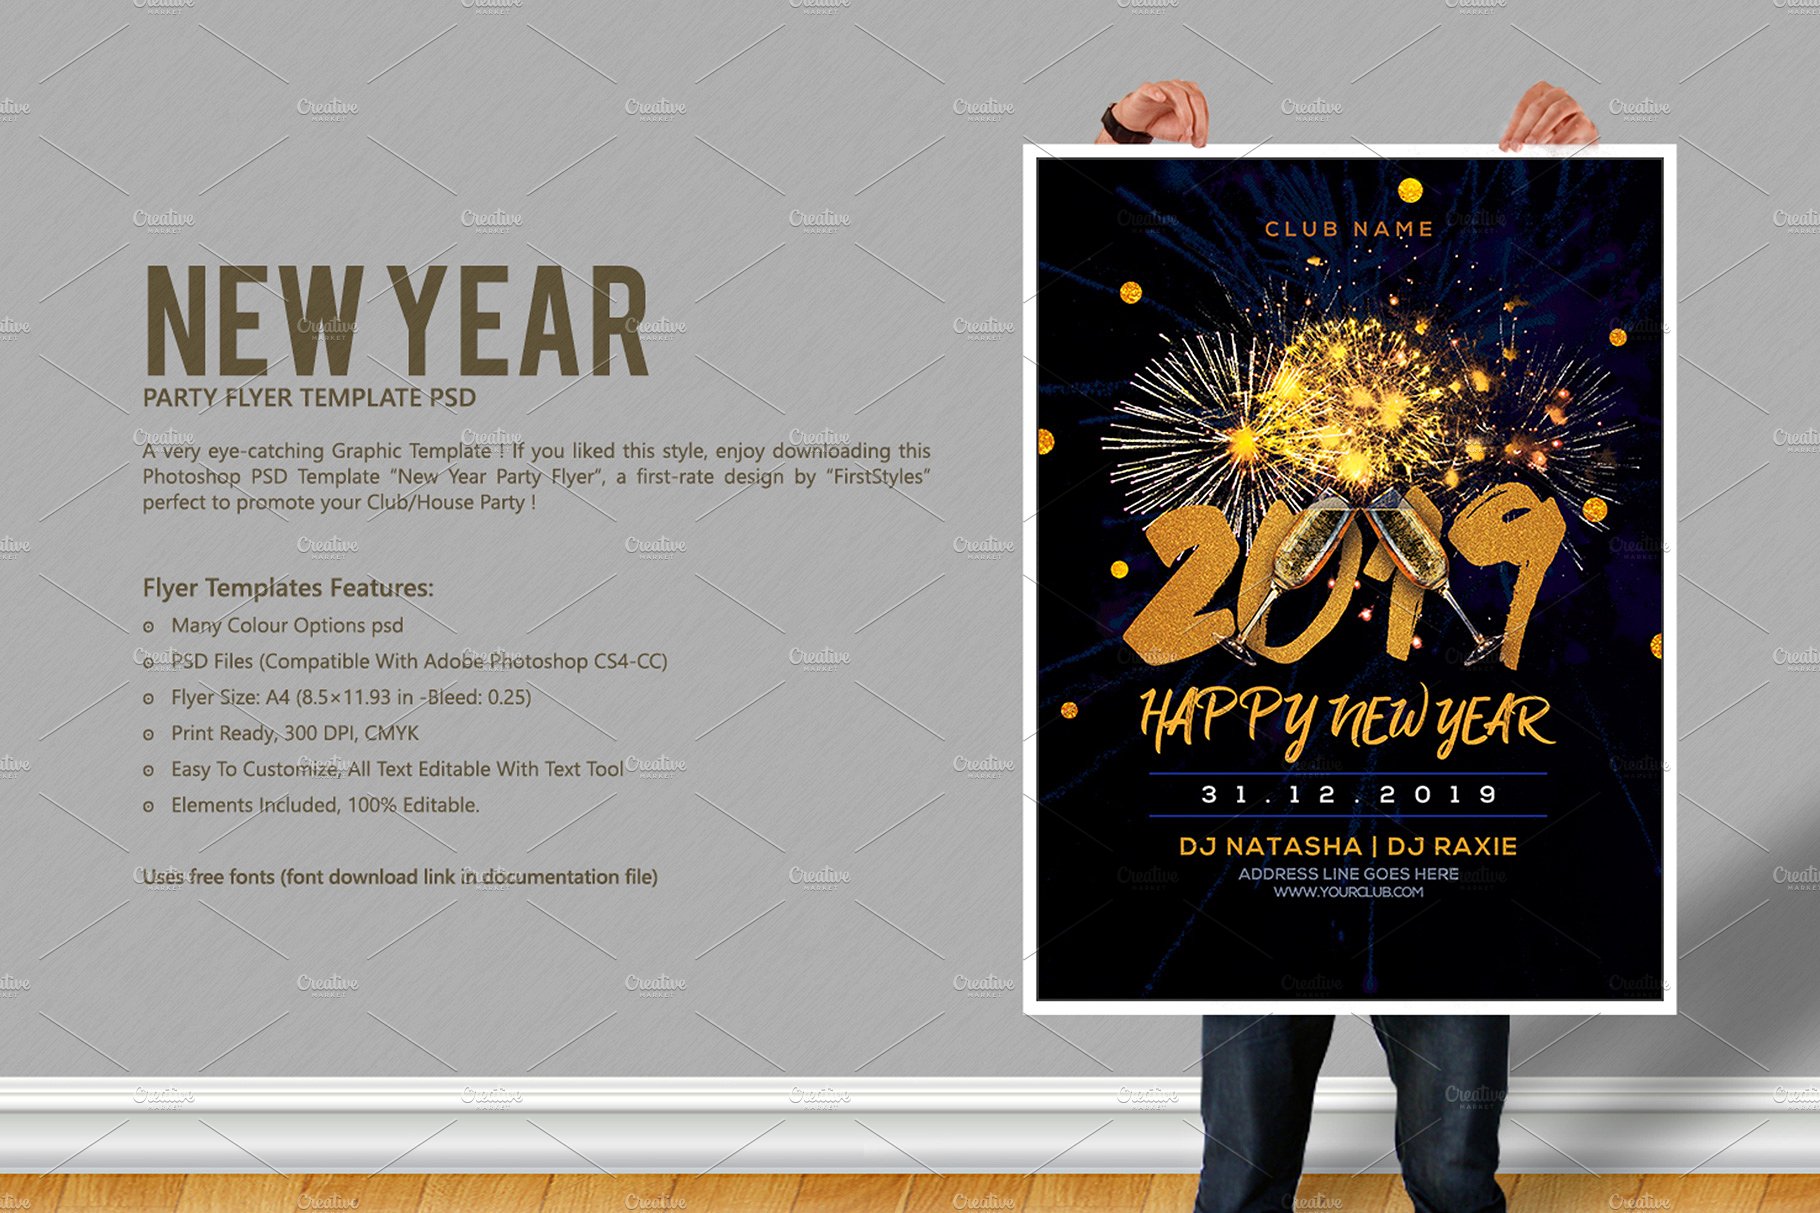 2019新年派对海报模板下载 New Year Party Flyer [psd]插图